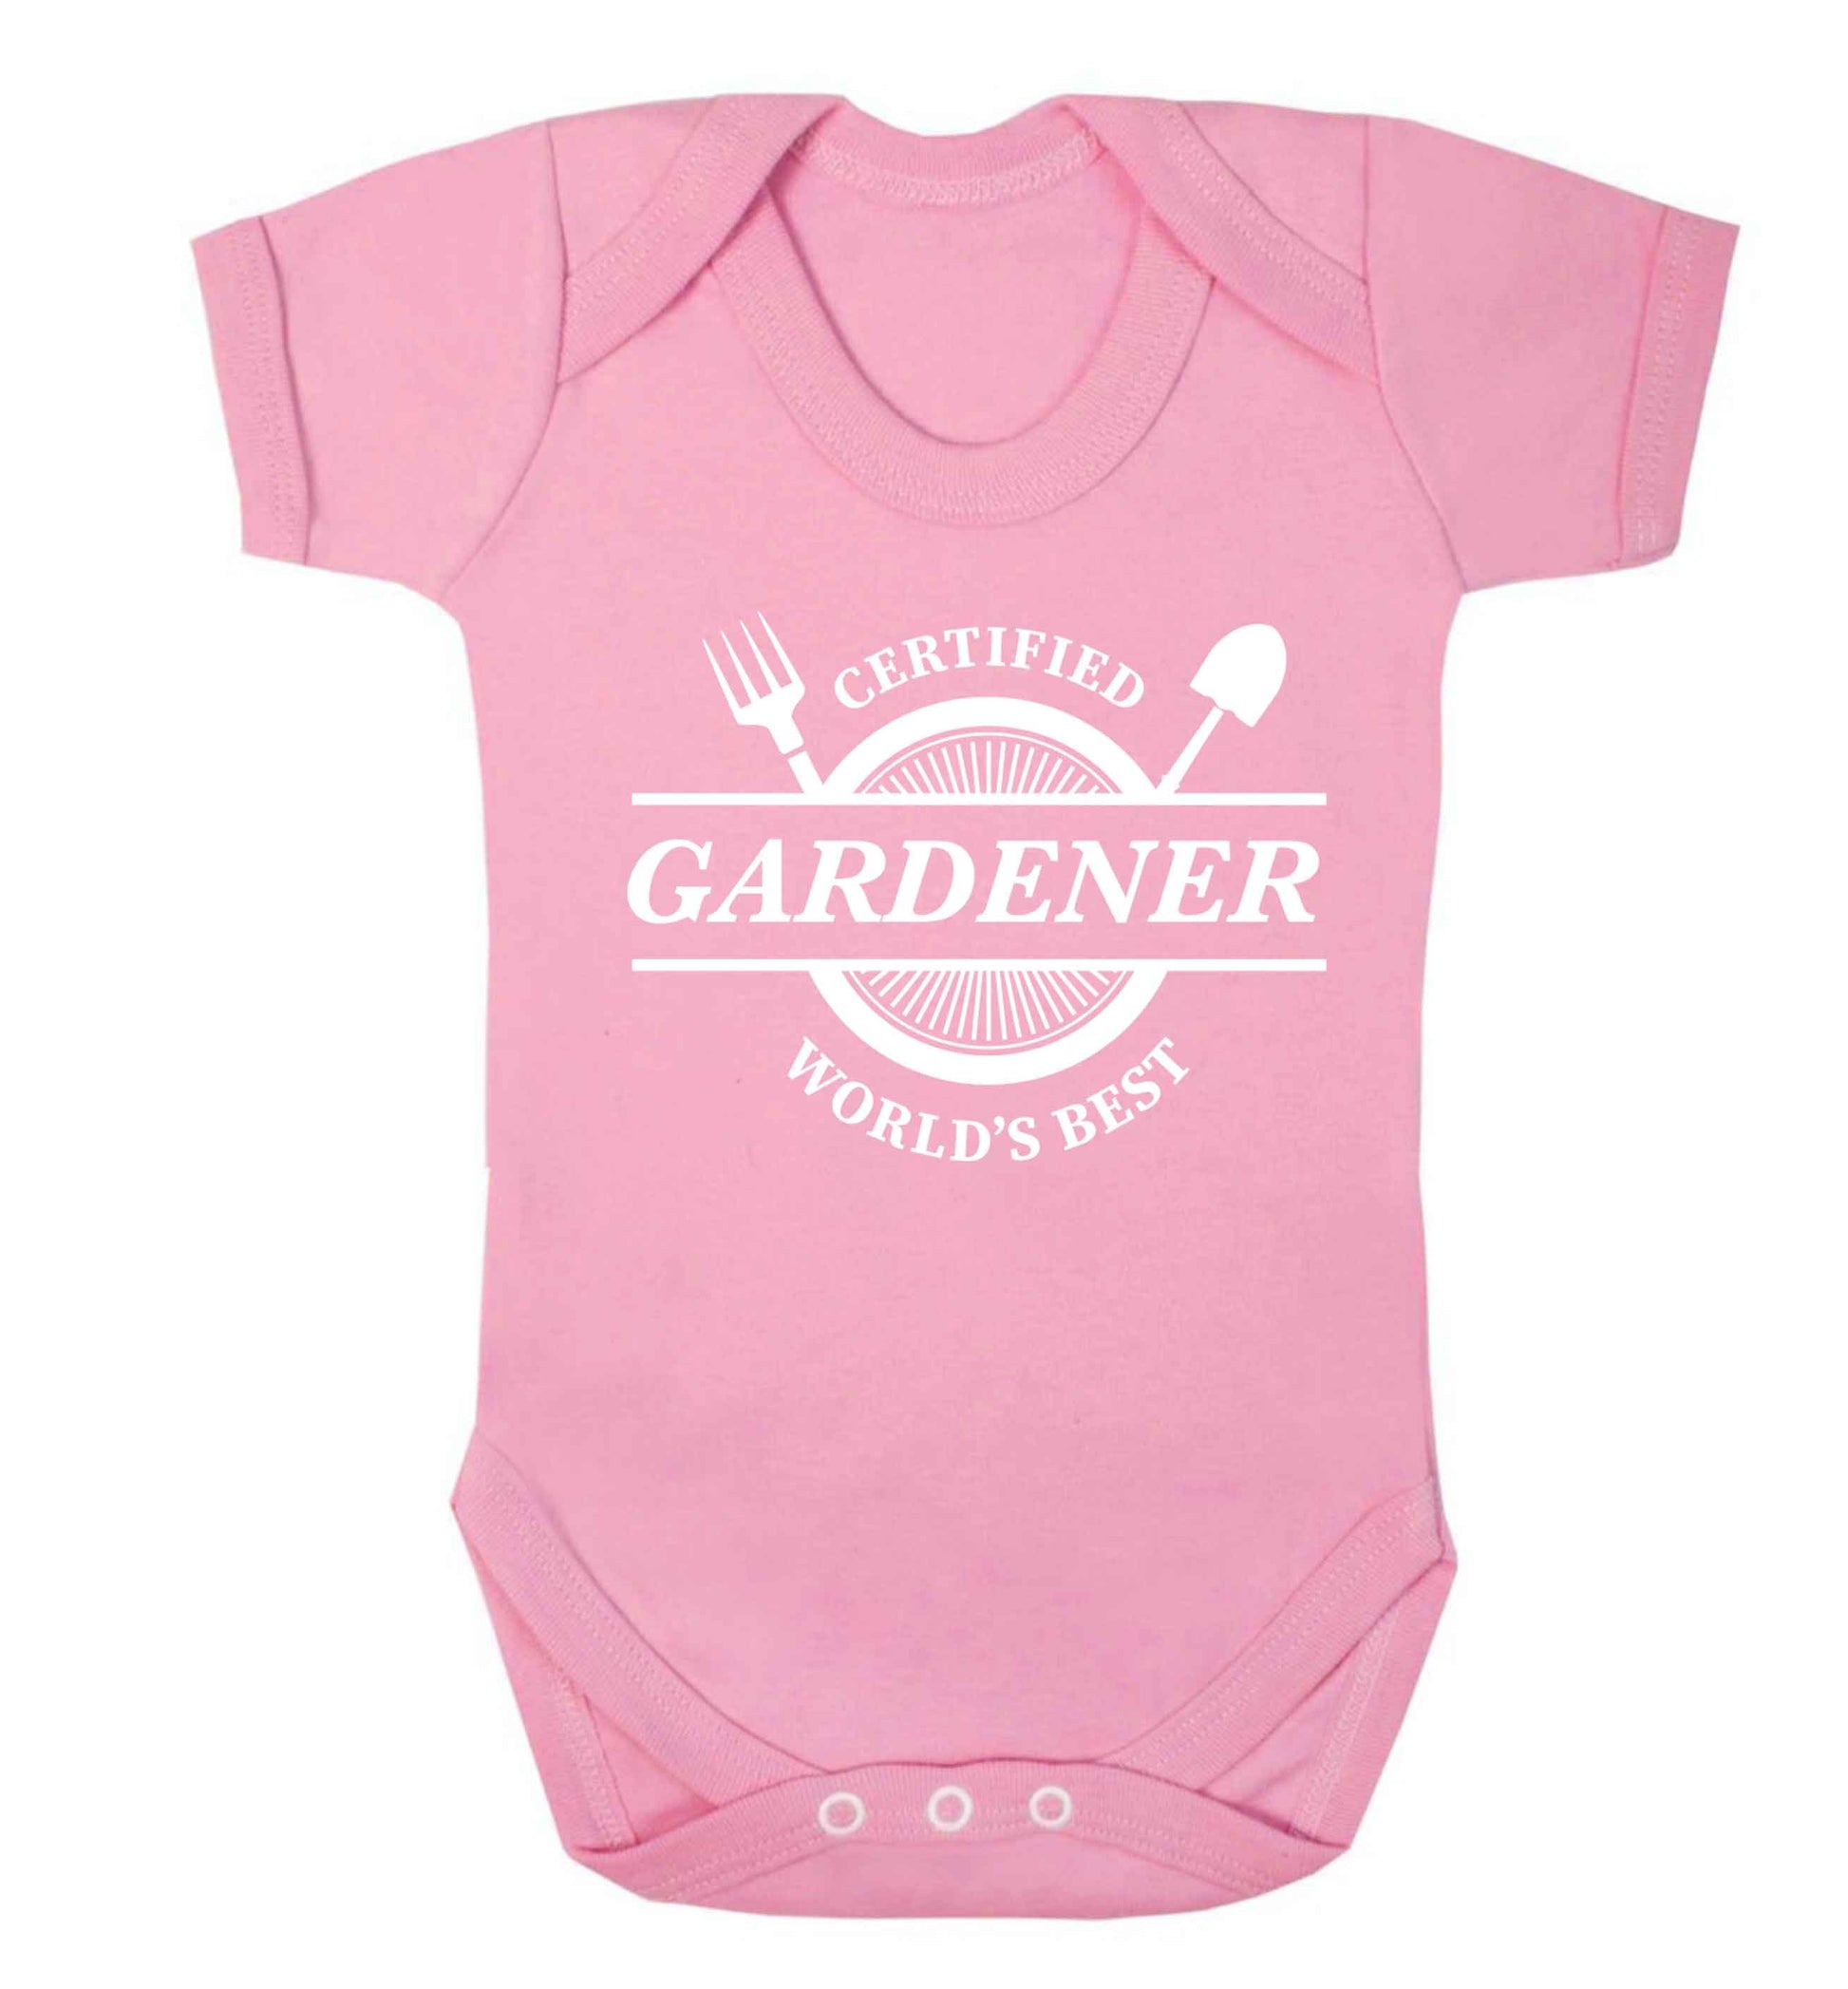 Certified gardener worlds best Baby Vest pale pink 18-24 months